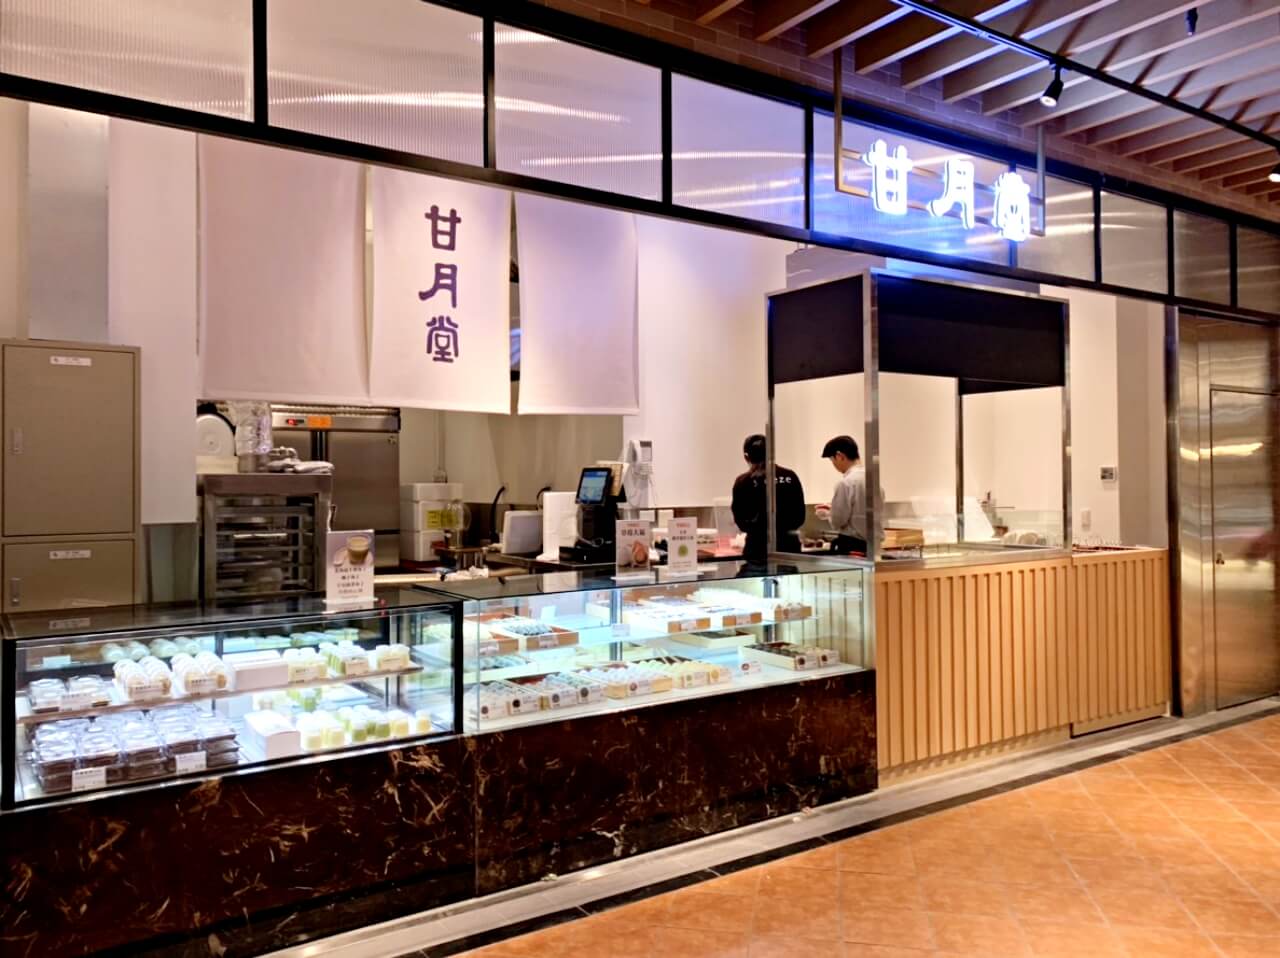 微風南山正式開幕，藍瓶咖啡台灣首間分店、洗頭機、霸嗎拉麵、米其林星級餐廳、超大超市